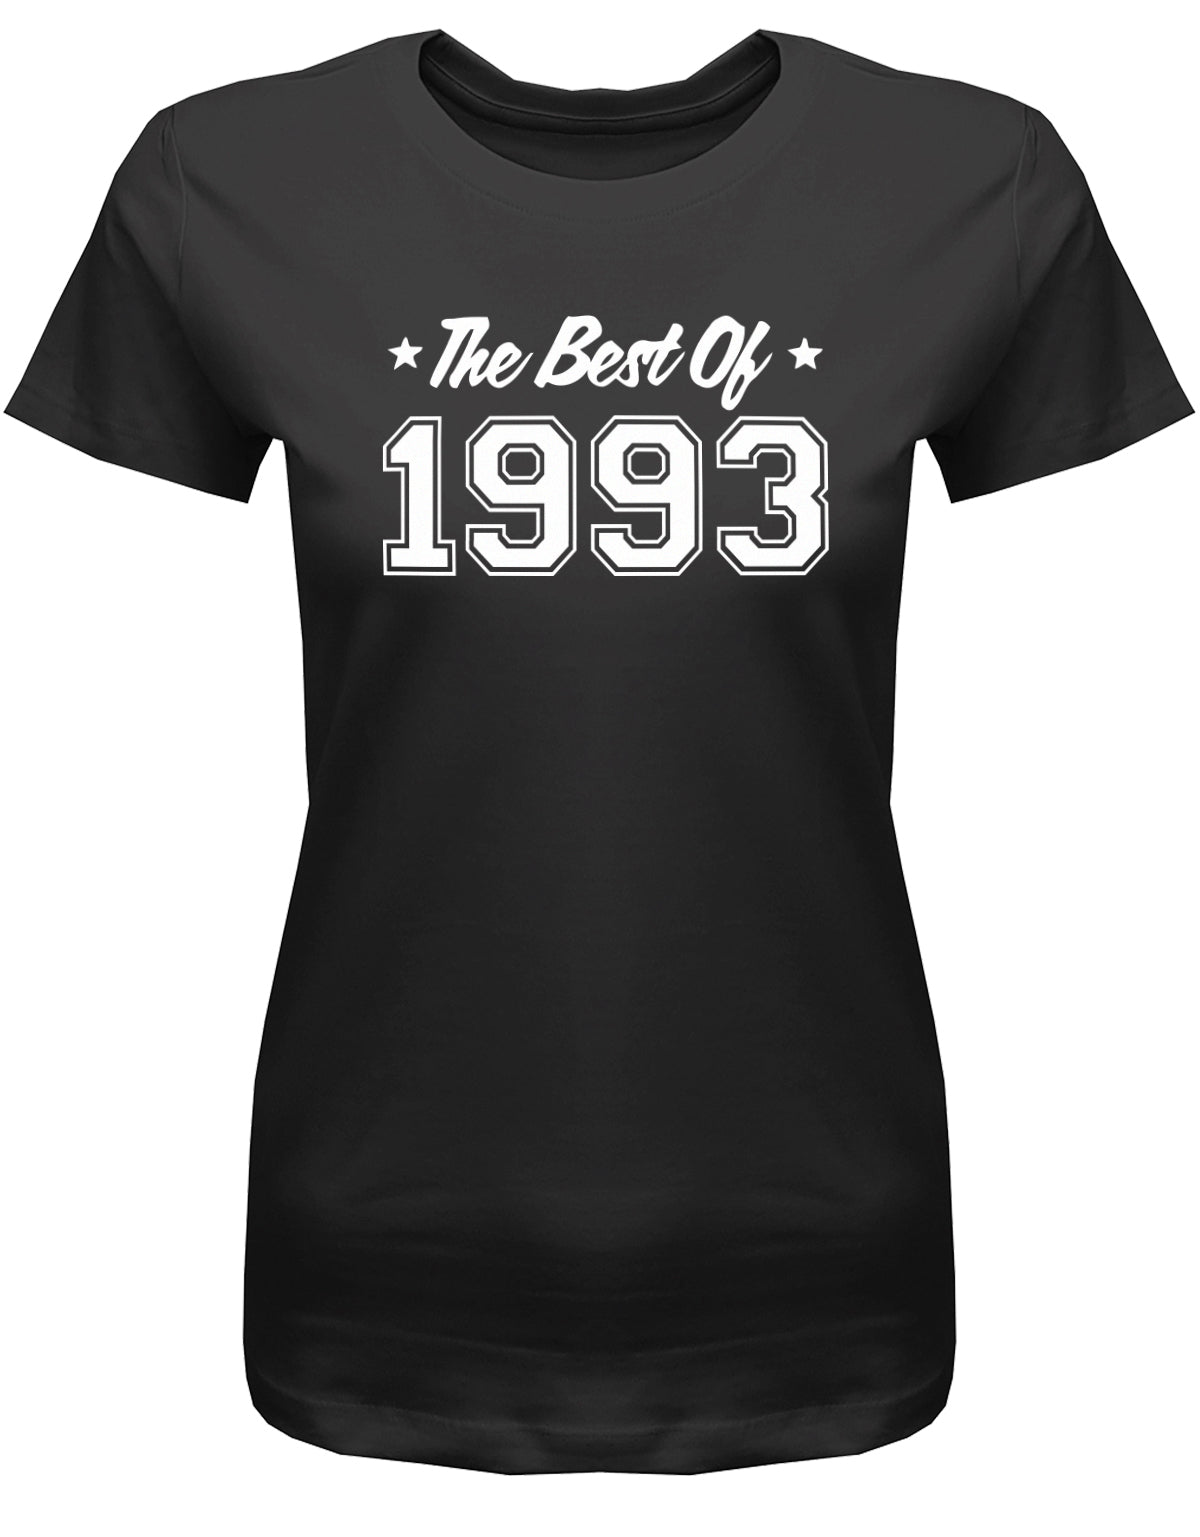 Lustiges T-Shirt zum 30. Geburtstag für die Frau Bedruckt mit: The best of 1993 ✓ Geschenk zum 30 geburtstag Frau ✓ 1993 geburtstag Frau ✓ 30 Geburtstag tshirt ✓ shirt geburtstag 30 SChwarz